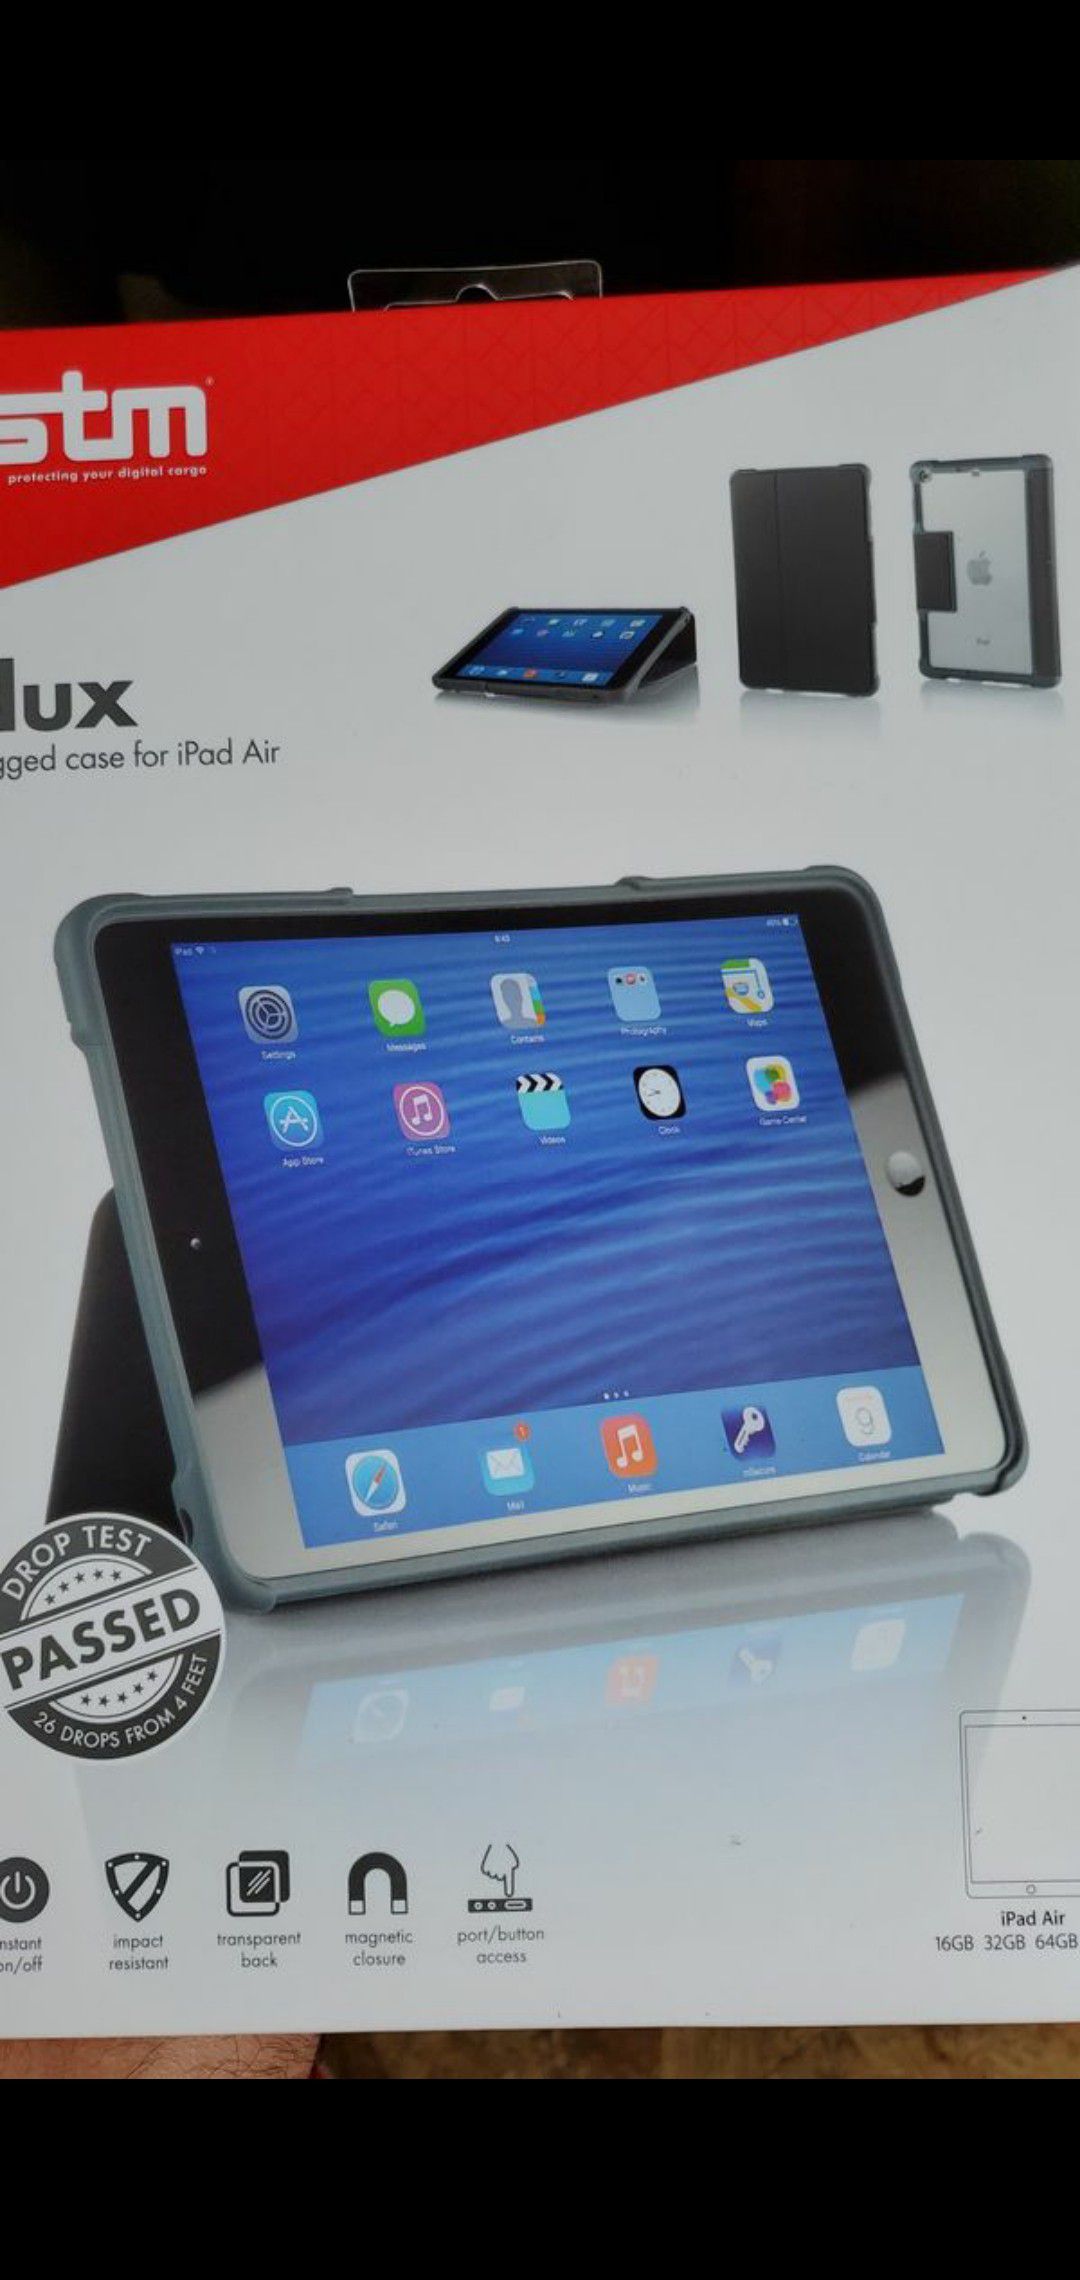 Stm dux ragged case for iPad air